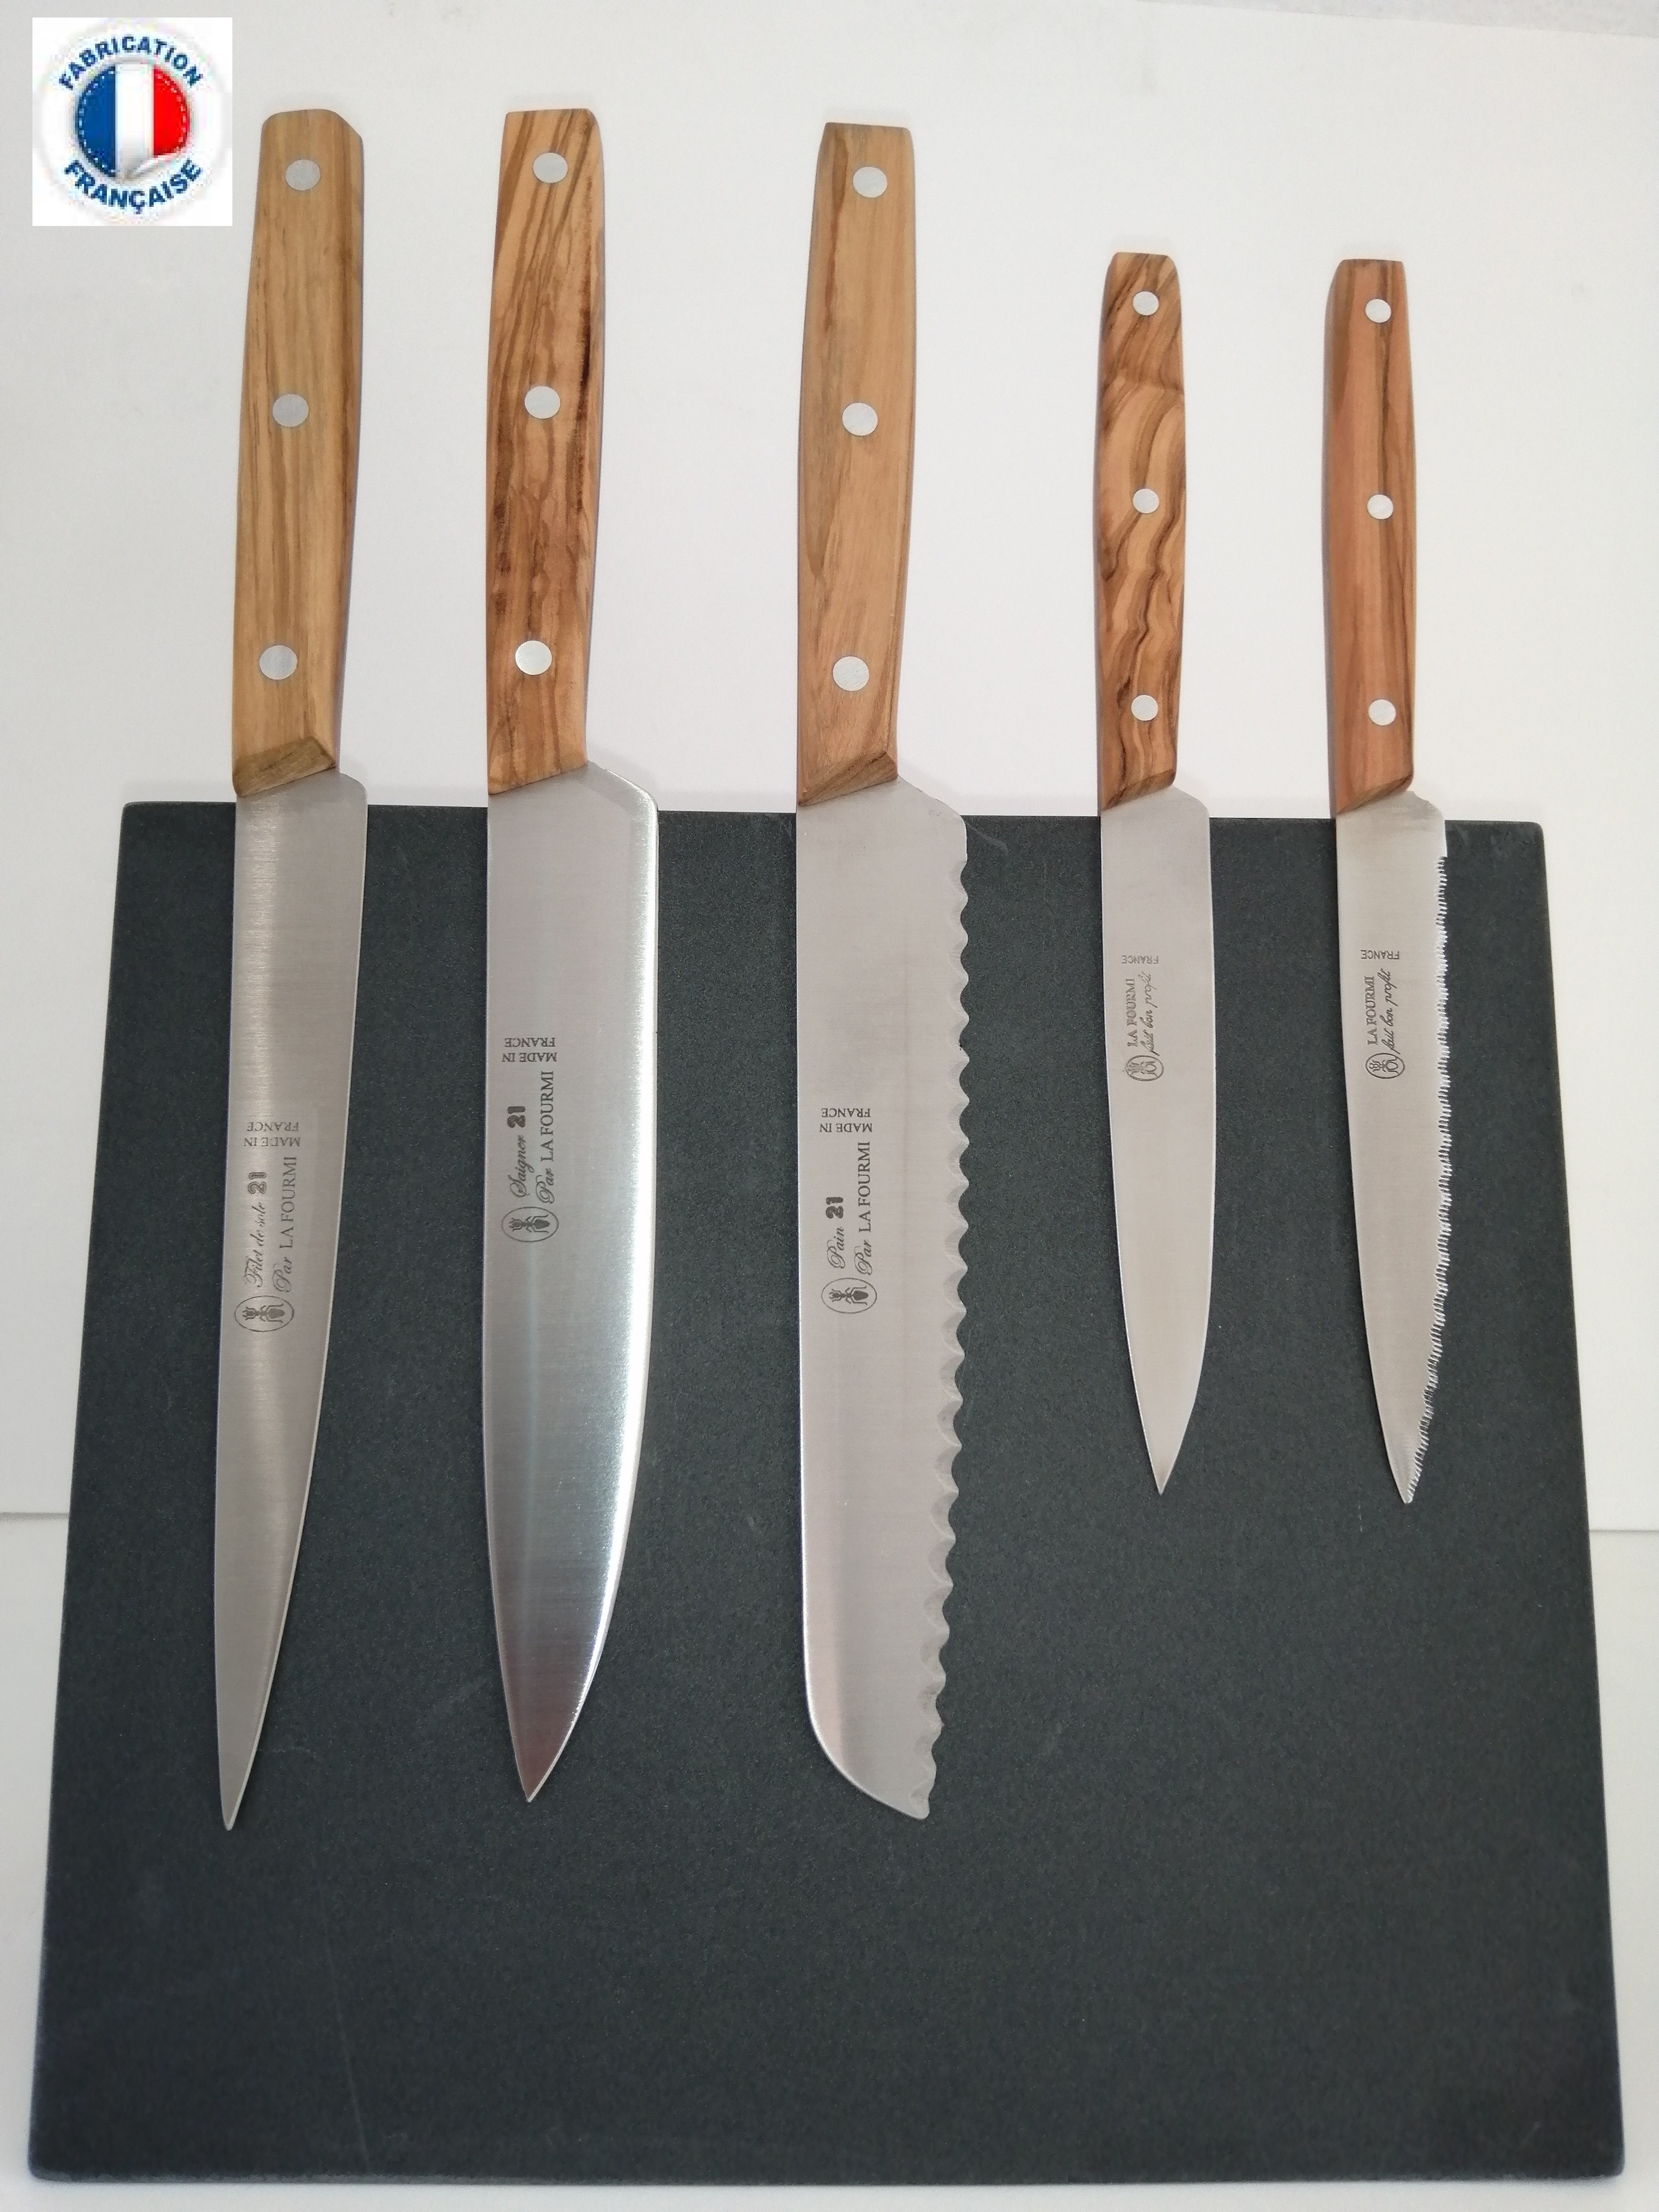 Couteaux de cuisine Made in France - Coutellerie française